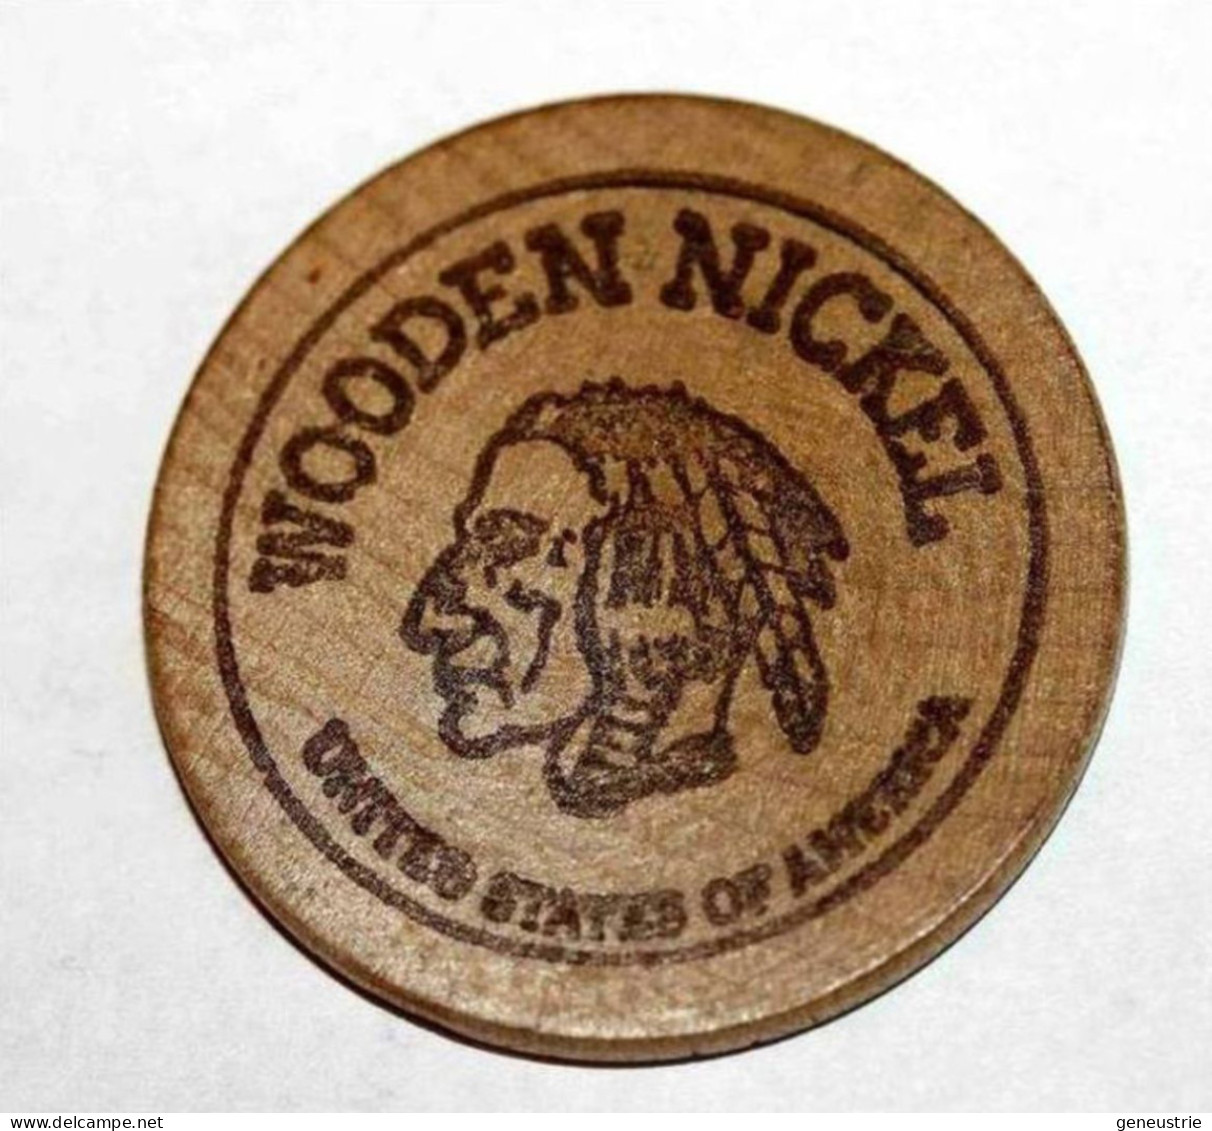 Wooden Token - Wooden Nickel - Jeton Bois Monnaie Nécessité - Tête D'Indien - Neidermyer Poultry 1984 - Etats-Unis - Monedas/ De Necesidad